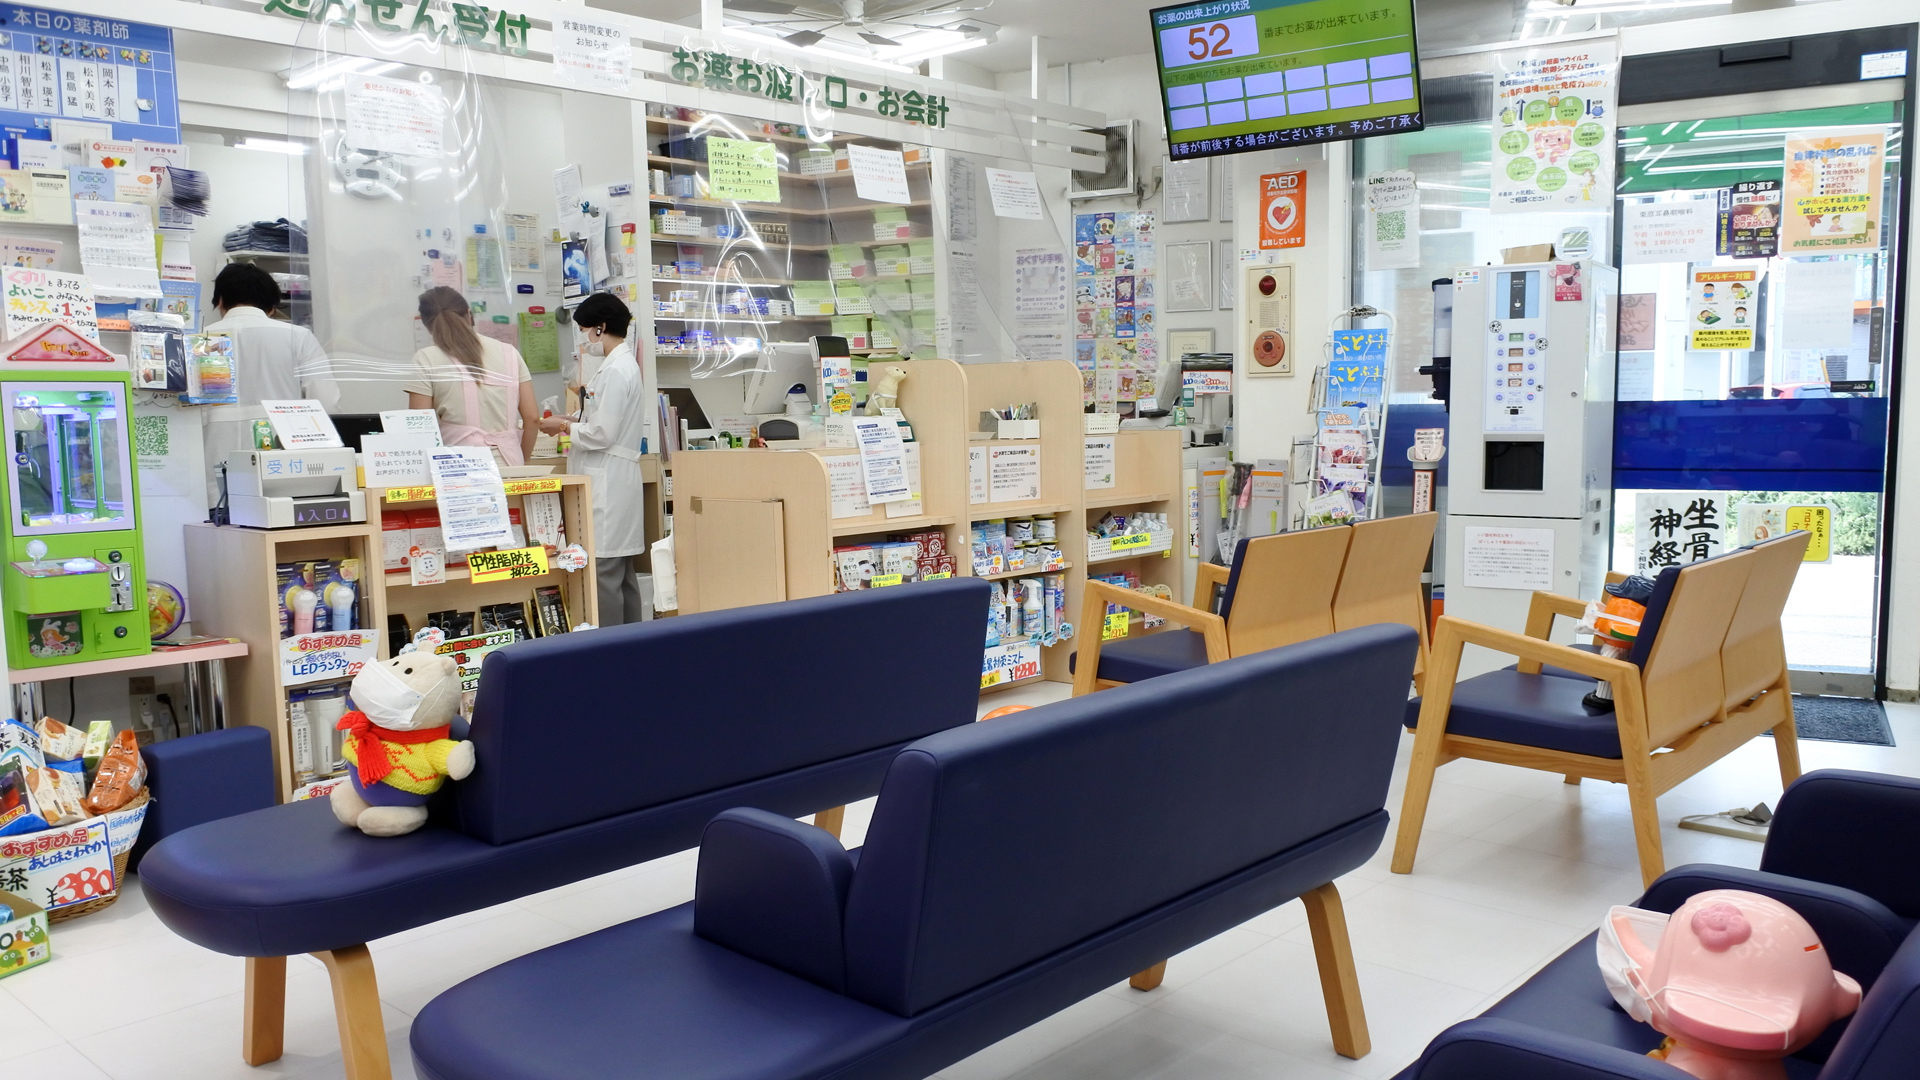 神奈川県三浦市、三浦海岸駅徒歩1分の調剤薬局「ぼーしゅうや薬局」は各種医療機関の処方箋受付のほか、化粧品や日用品も豊富に取り扱っております。